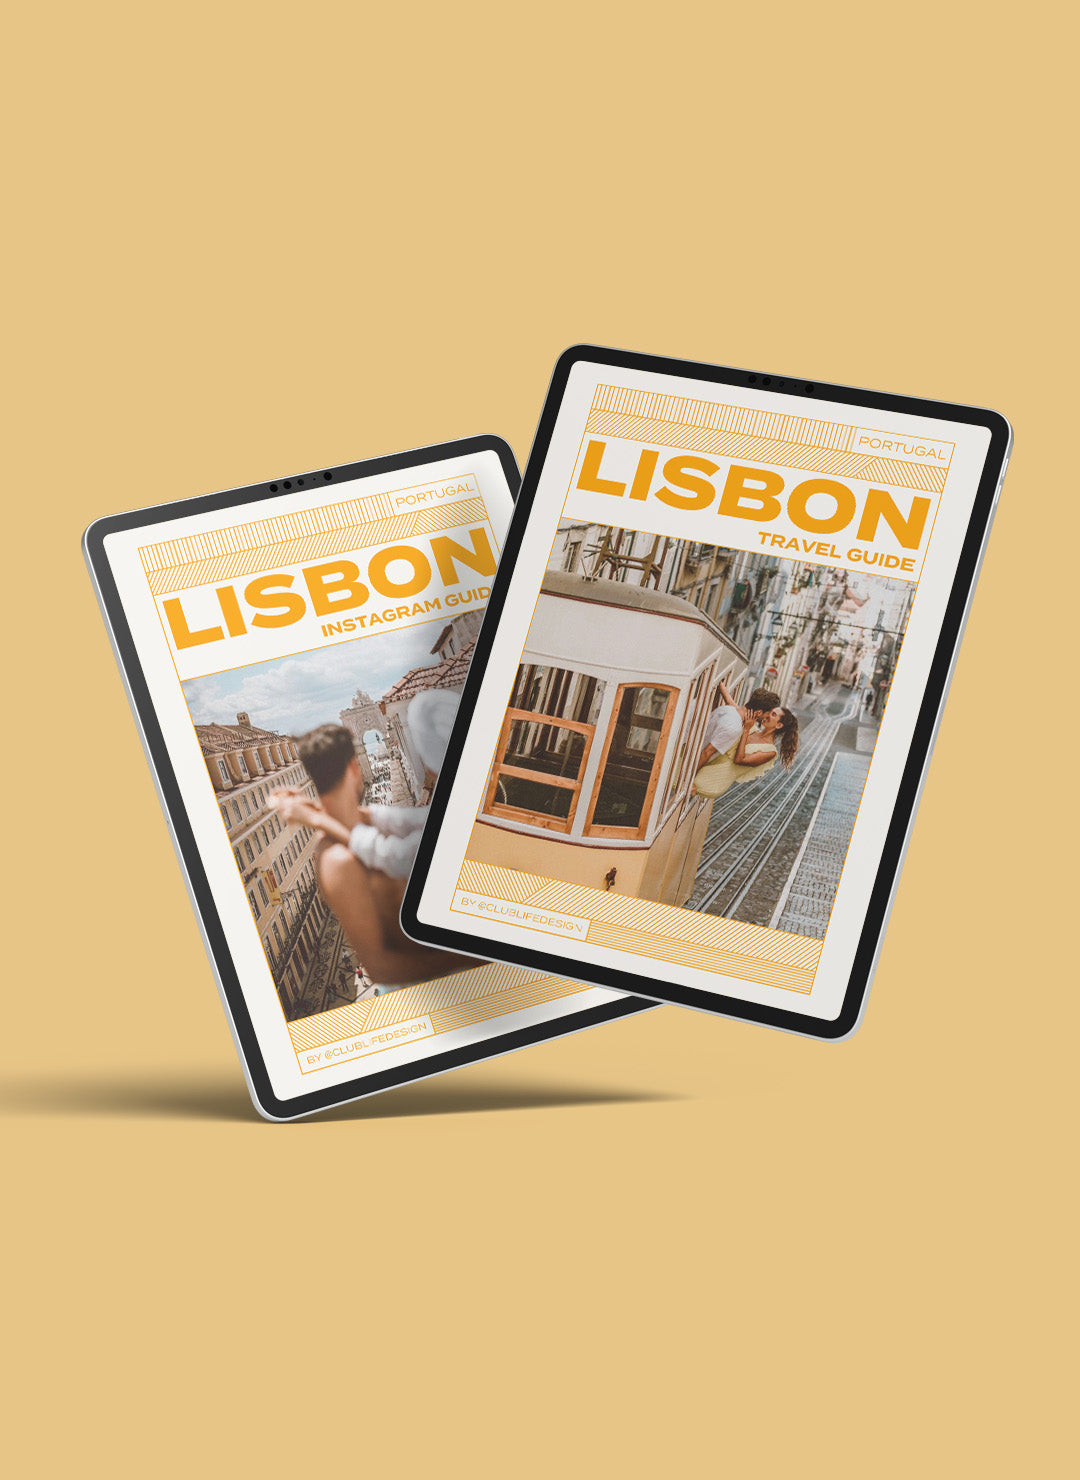 Lisbon Explorer Bundle: Travel Guide & Instagrammable Photo Spot Guide